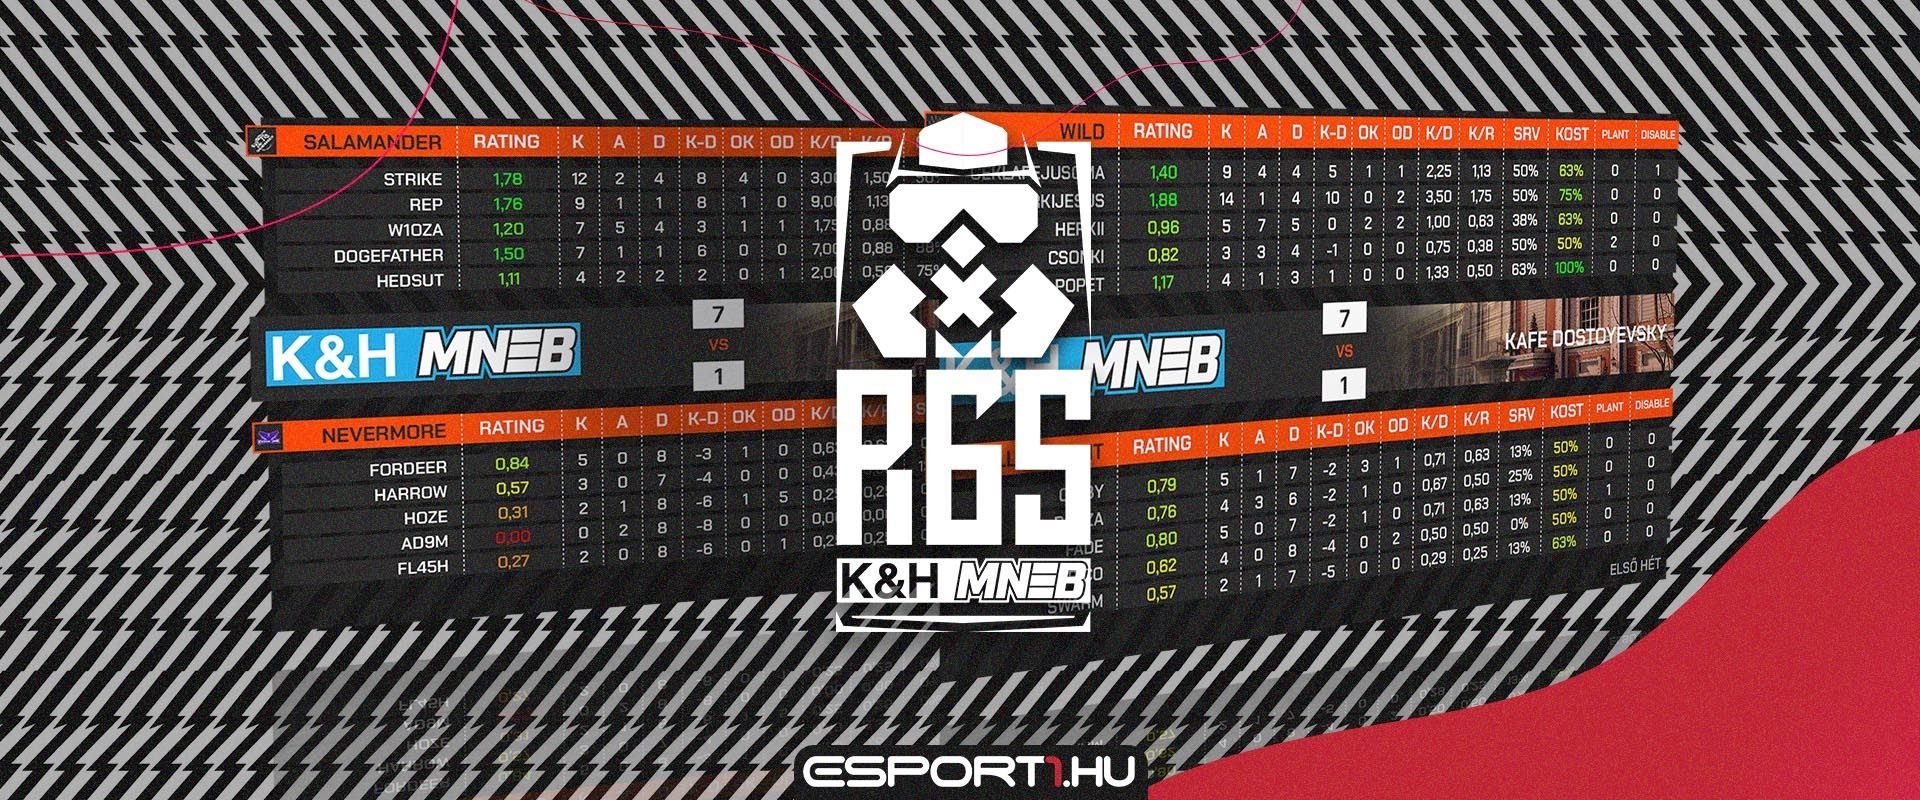 Kik a legjobb R6 játékosai eddig a K&H MNEB-nek? A statisztikából kiderül!